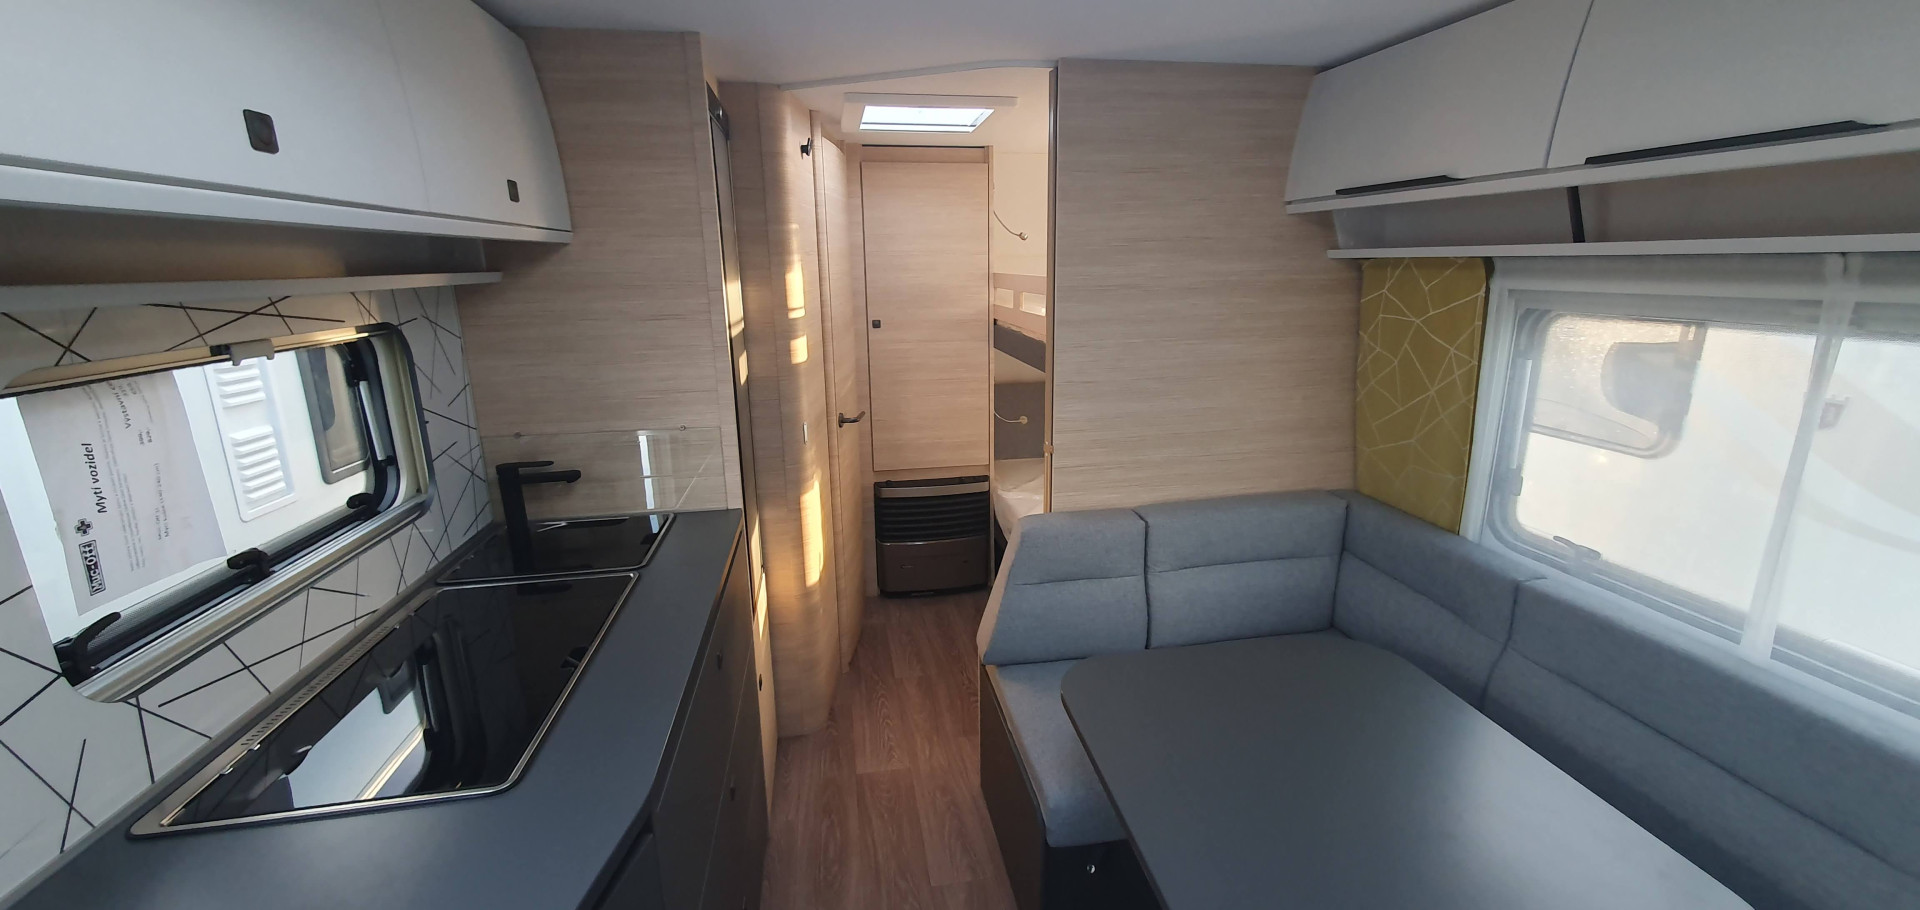 nový karavan na prodej Praha